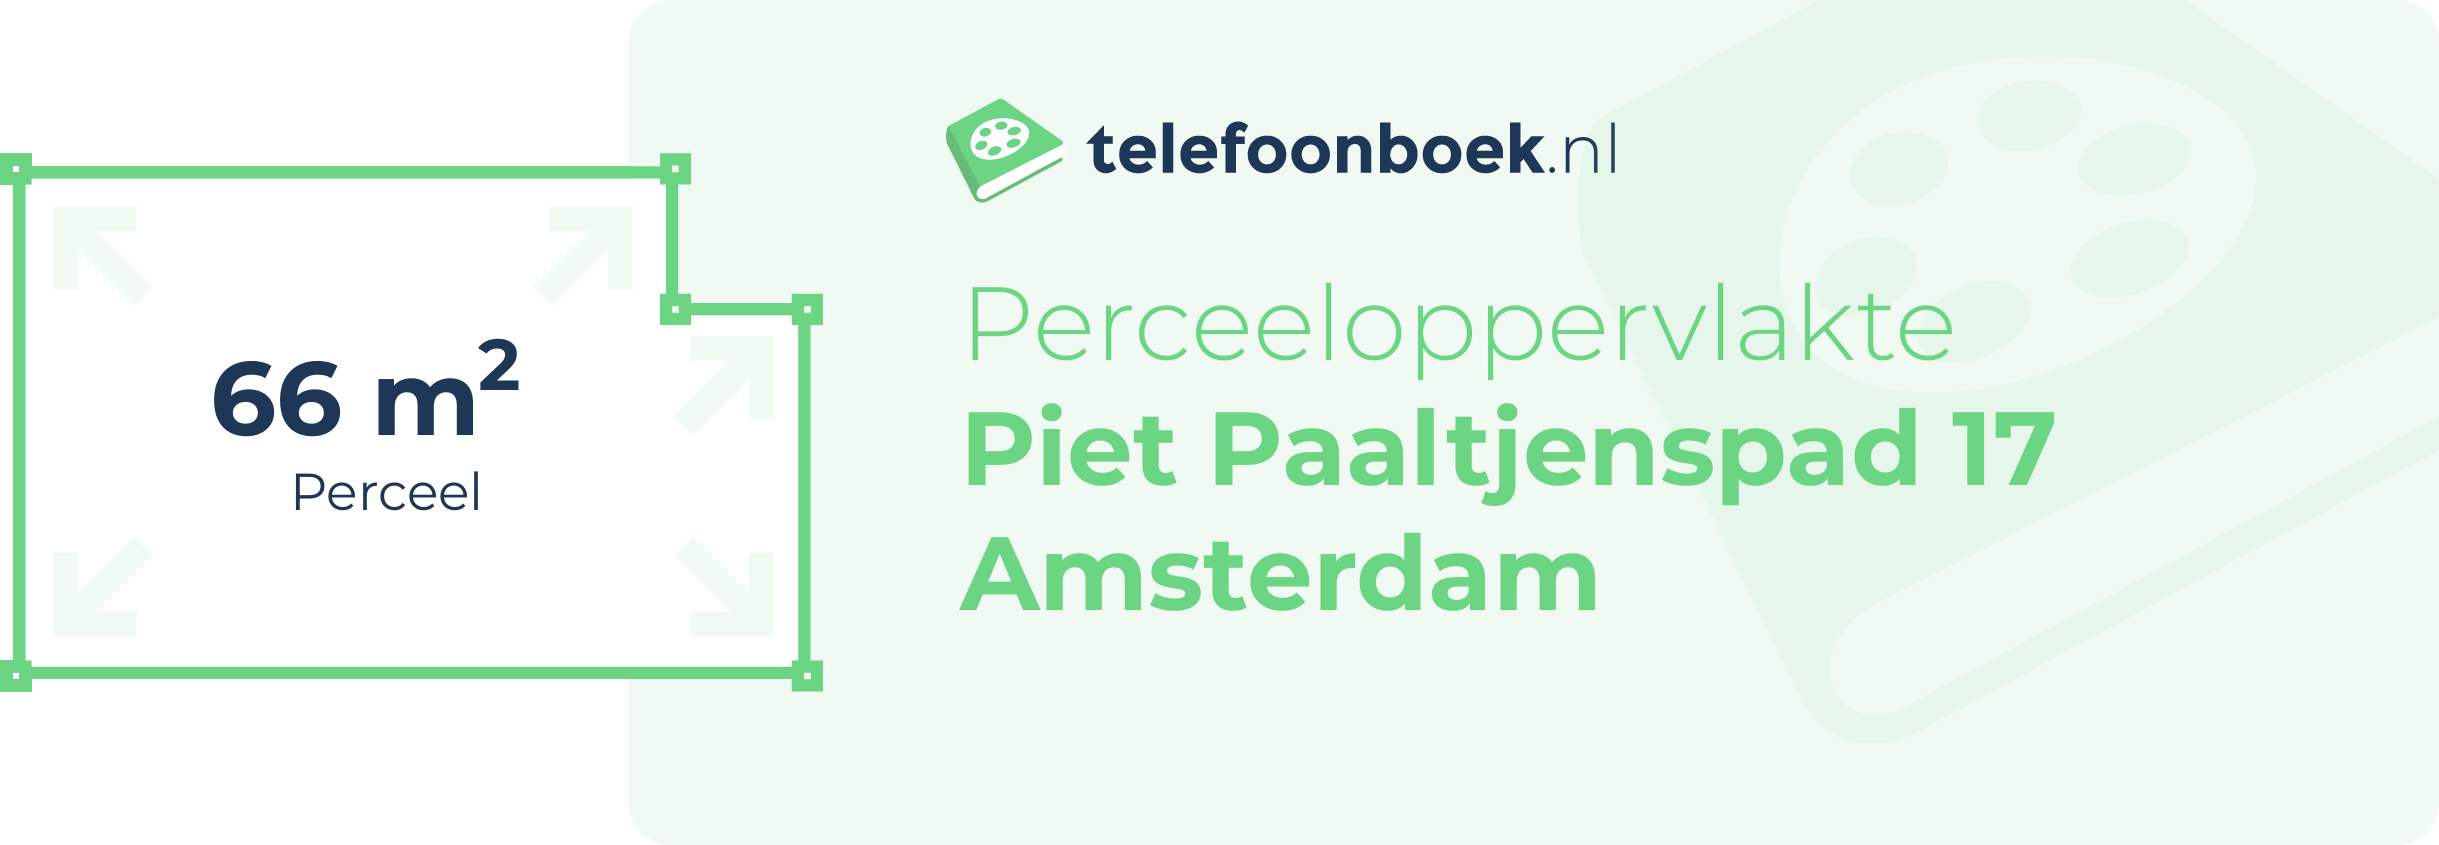 Perceeloppervlakte Piet Paaltjenspad 17 Amsterdam